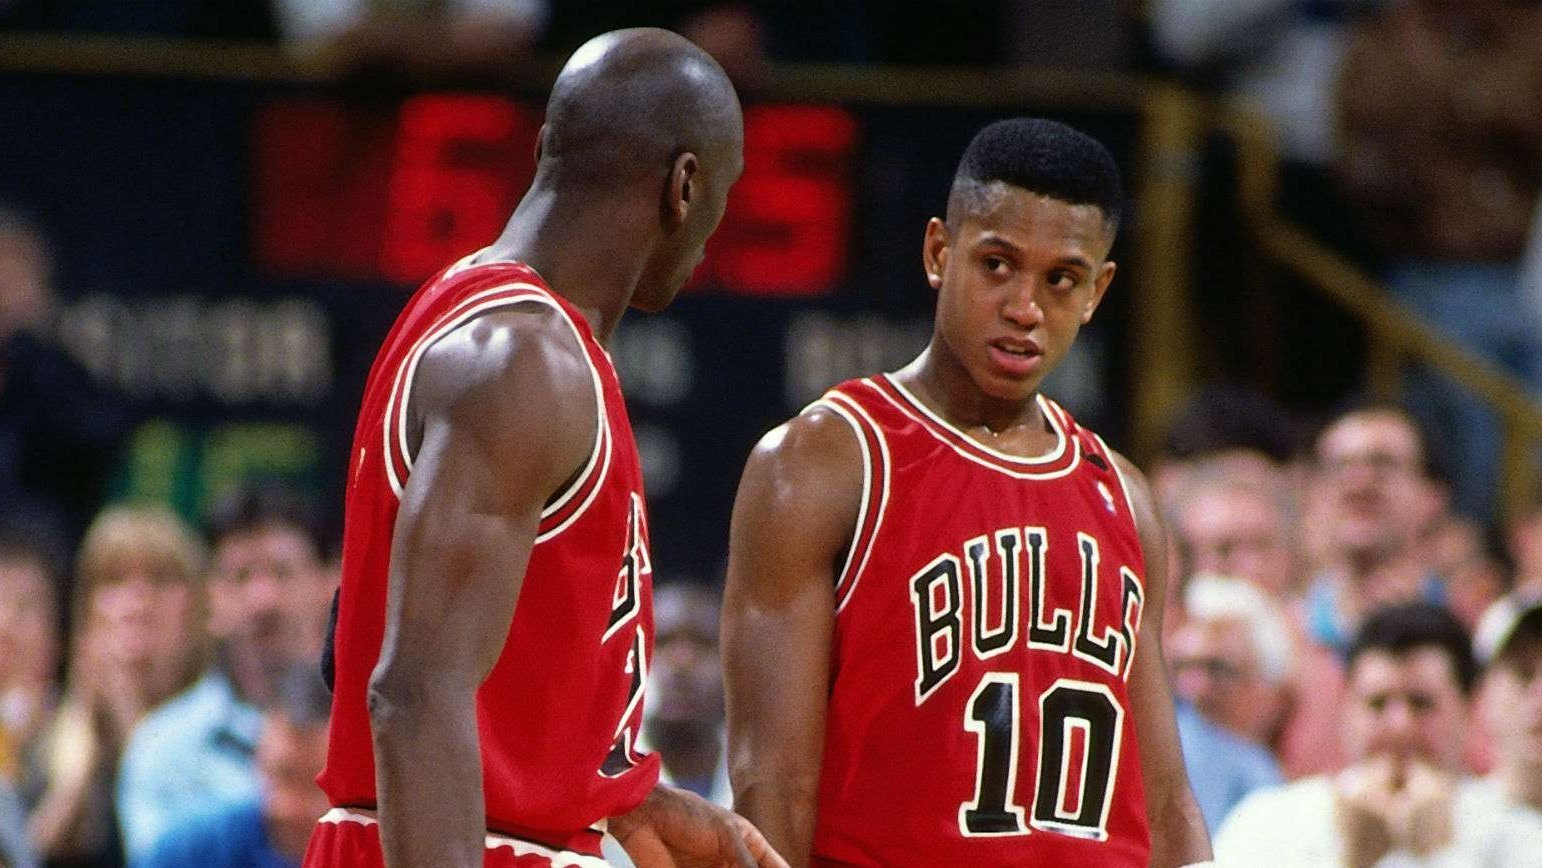 BJ Armstrong atiende a las instrucciones de Michael Jordan durante un partido de los Bulls.